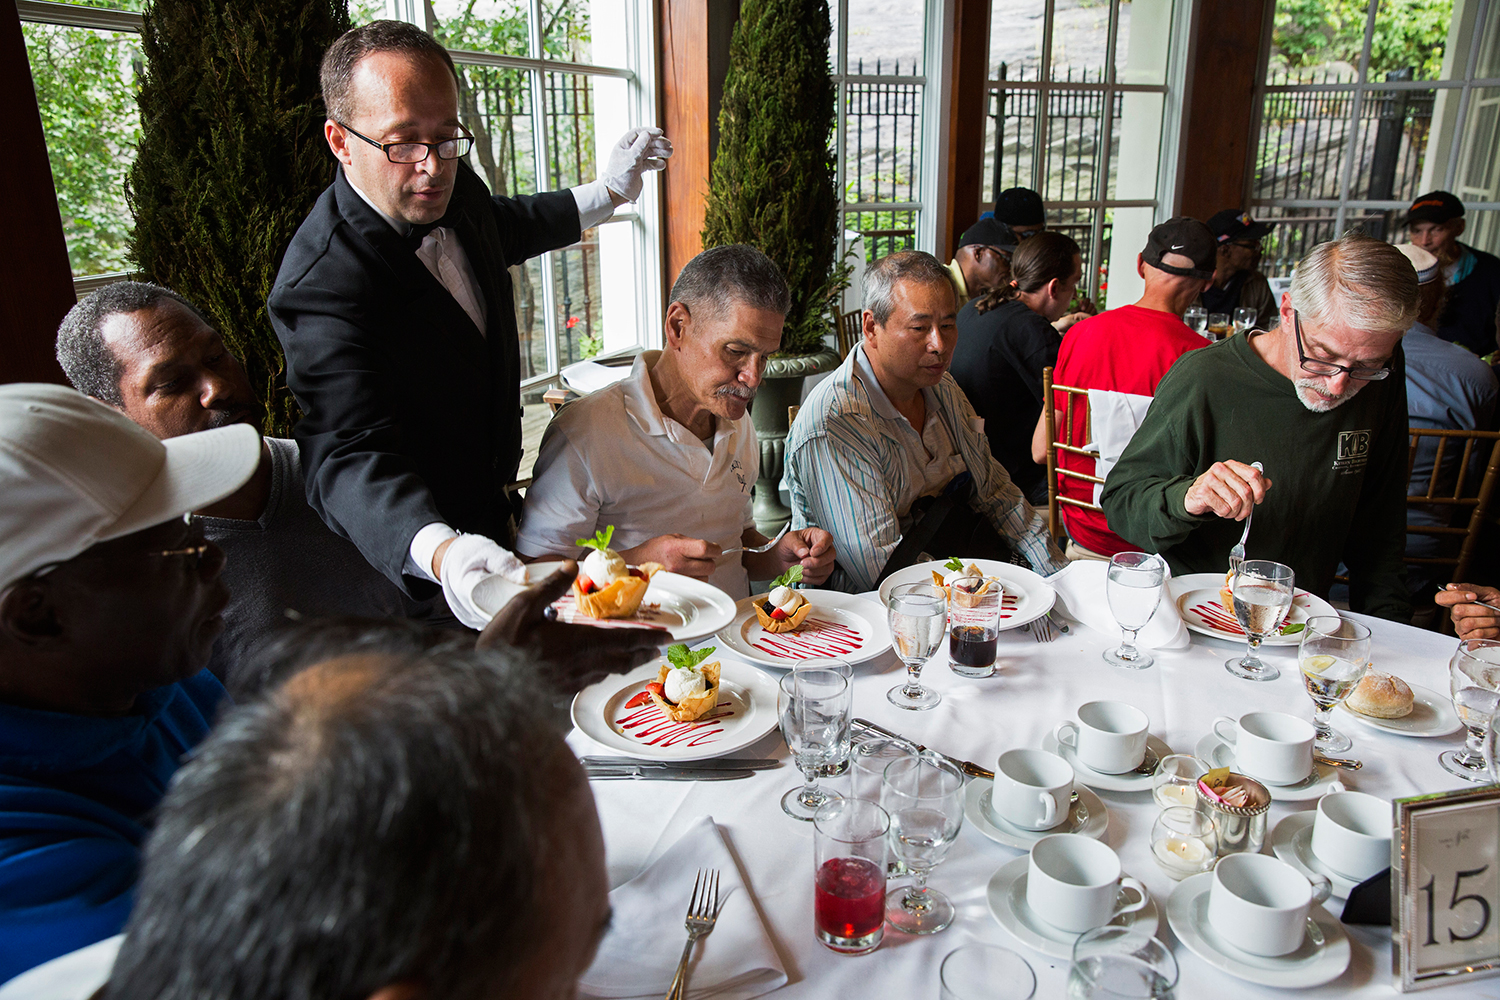 Una pareja cancela su boda y aprovecha el banquete para dar de comer a 90 indigentes